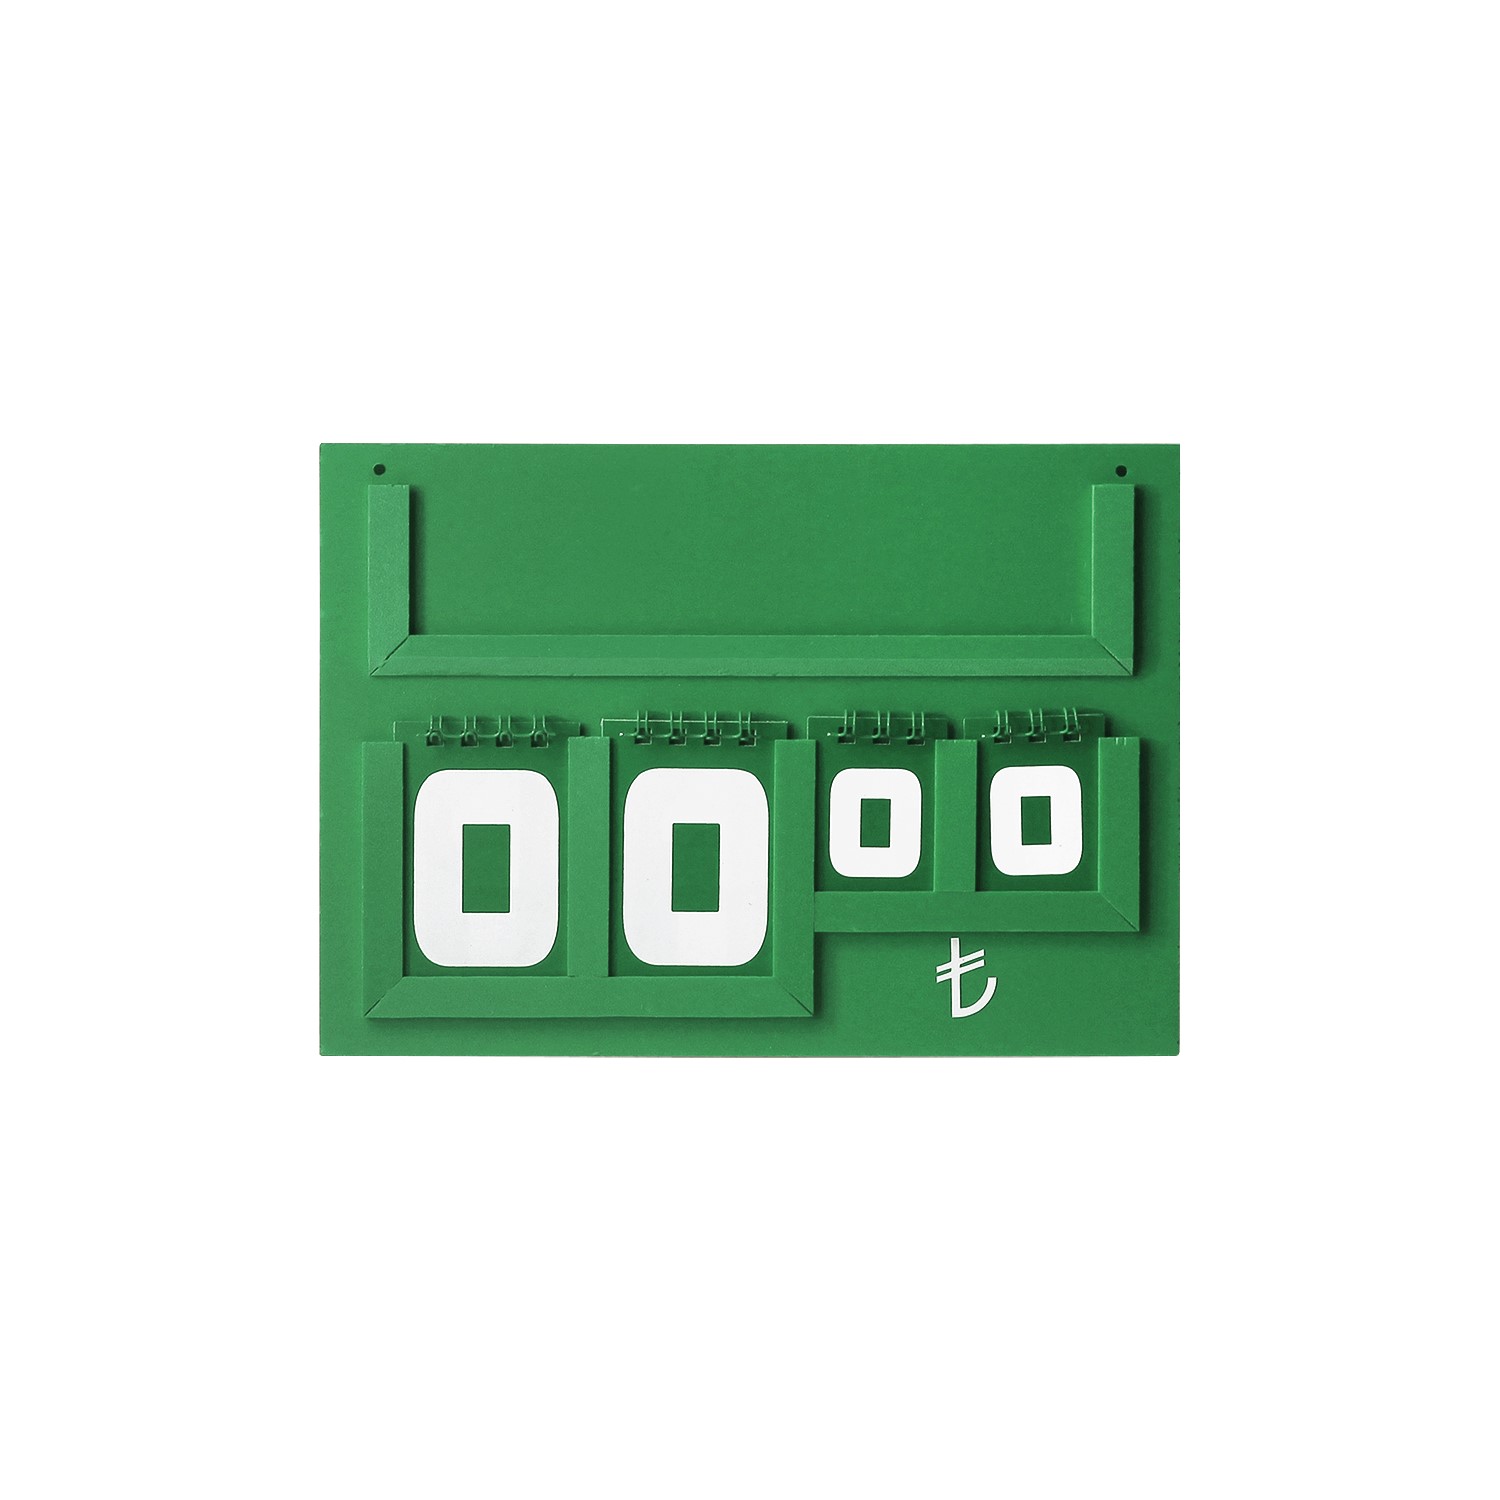 Yazılı Manav Etiketi Maxi Tek Taraflı 15x21 cm Yeşil -1.jpg (131 KB)